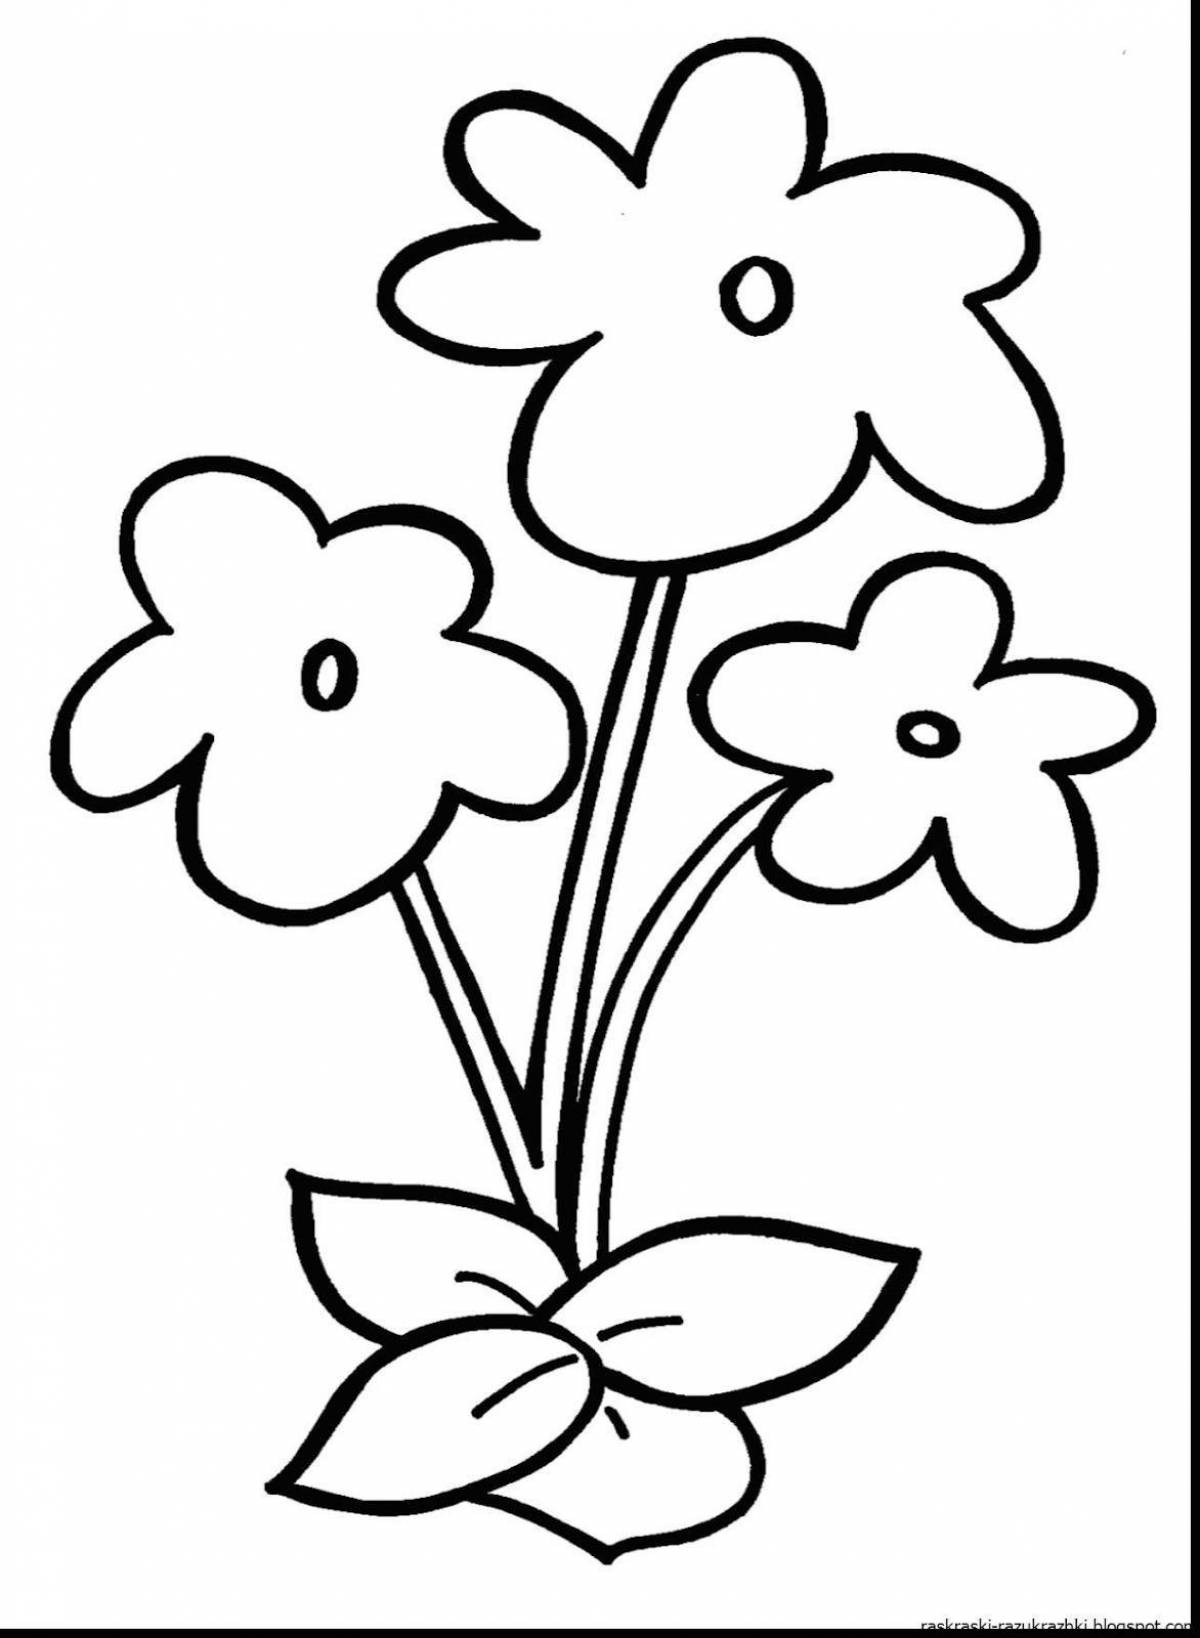 Светящаяся раскраска цветок для детей 5-6 лет